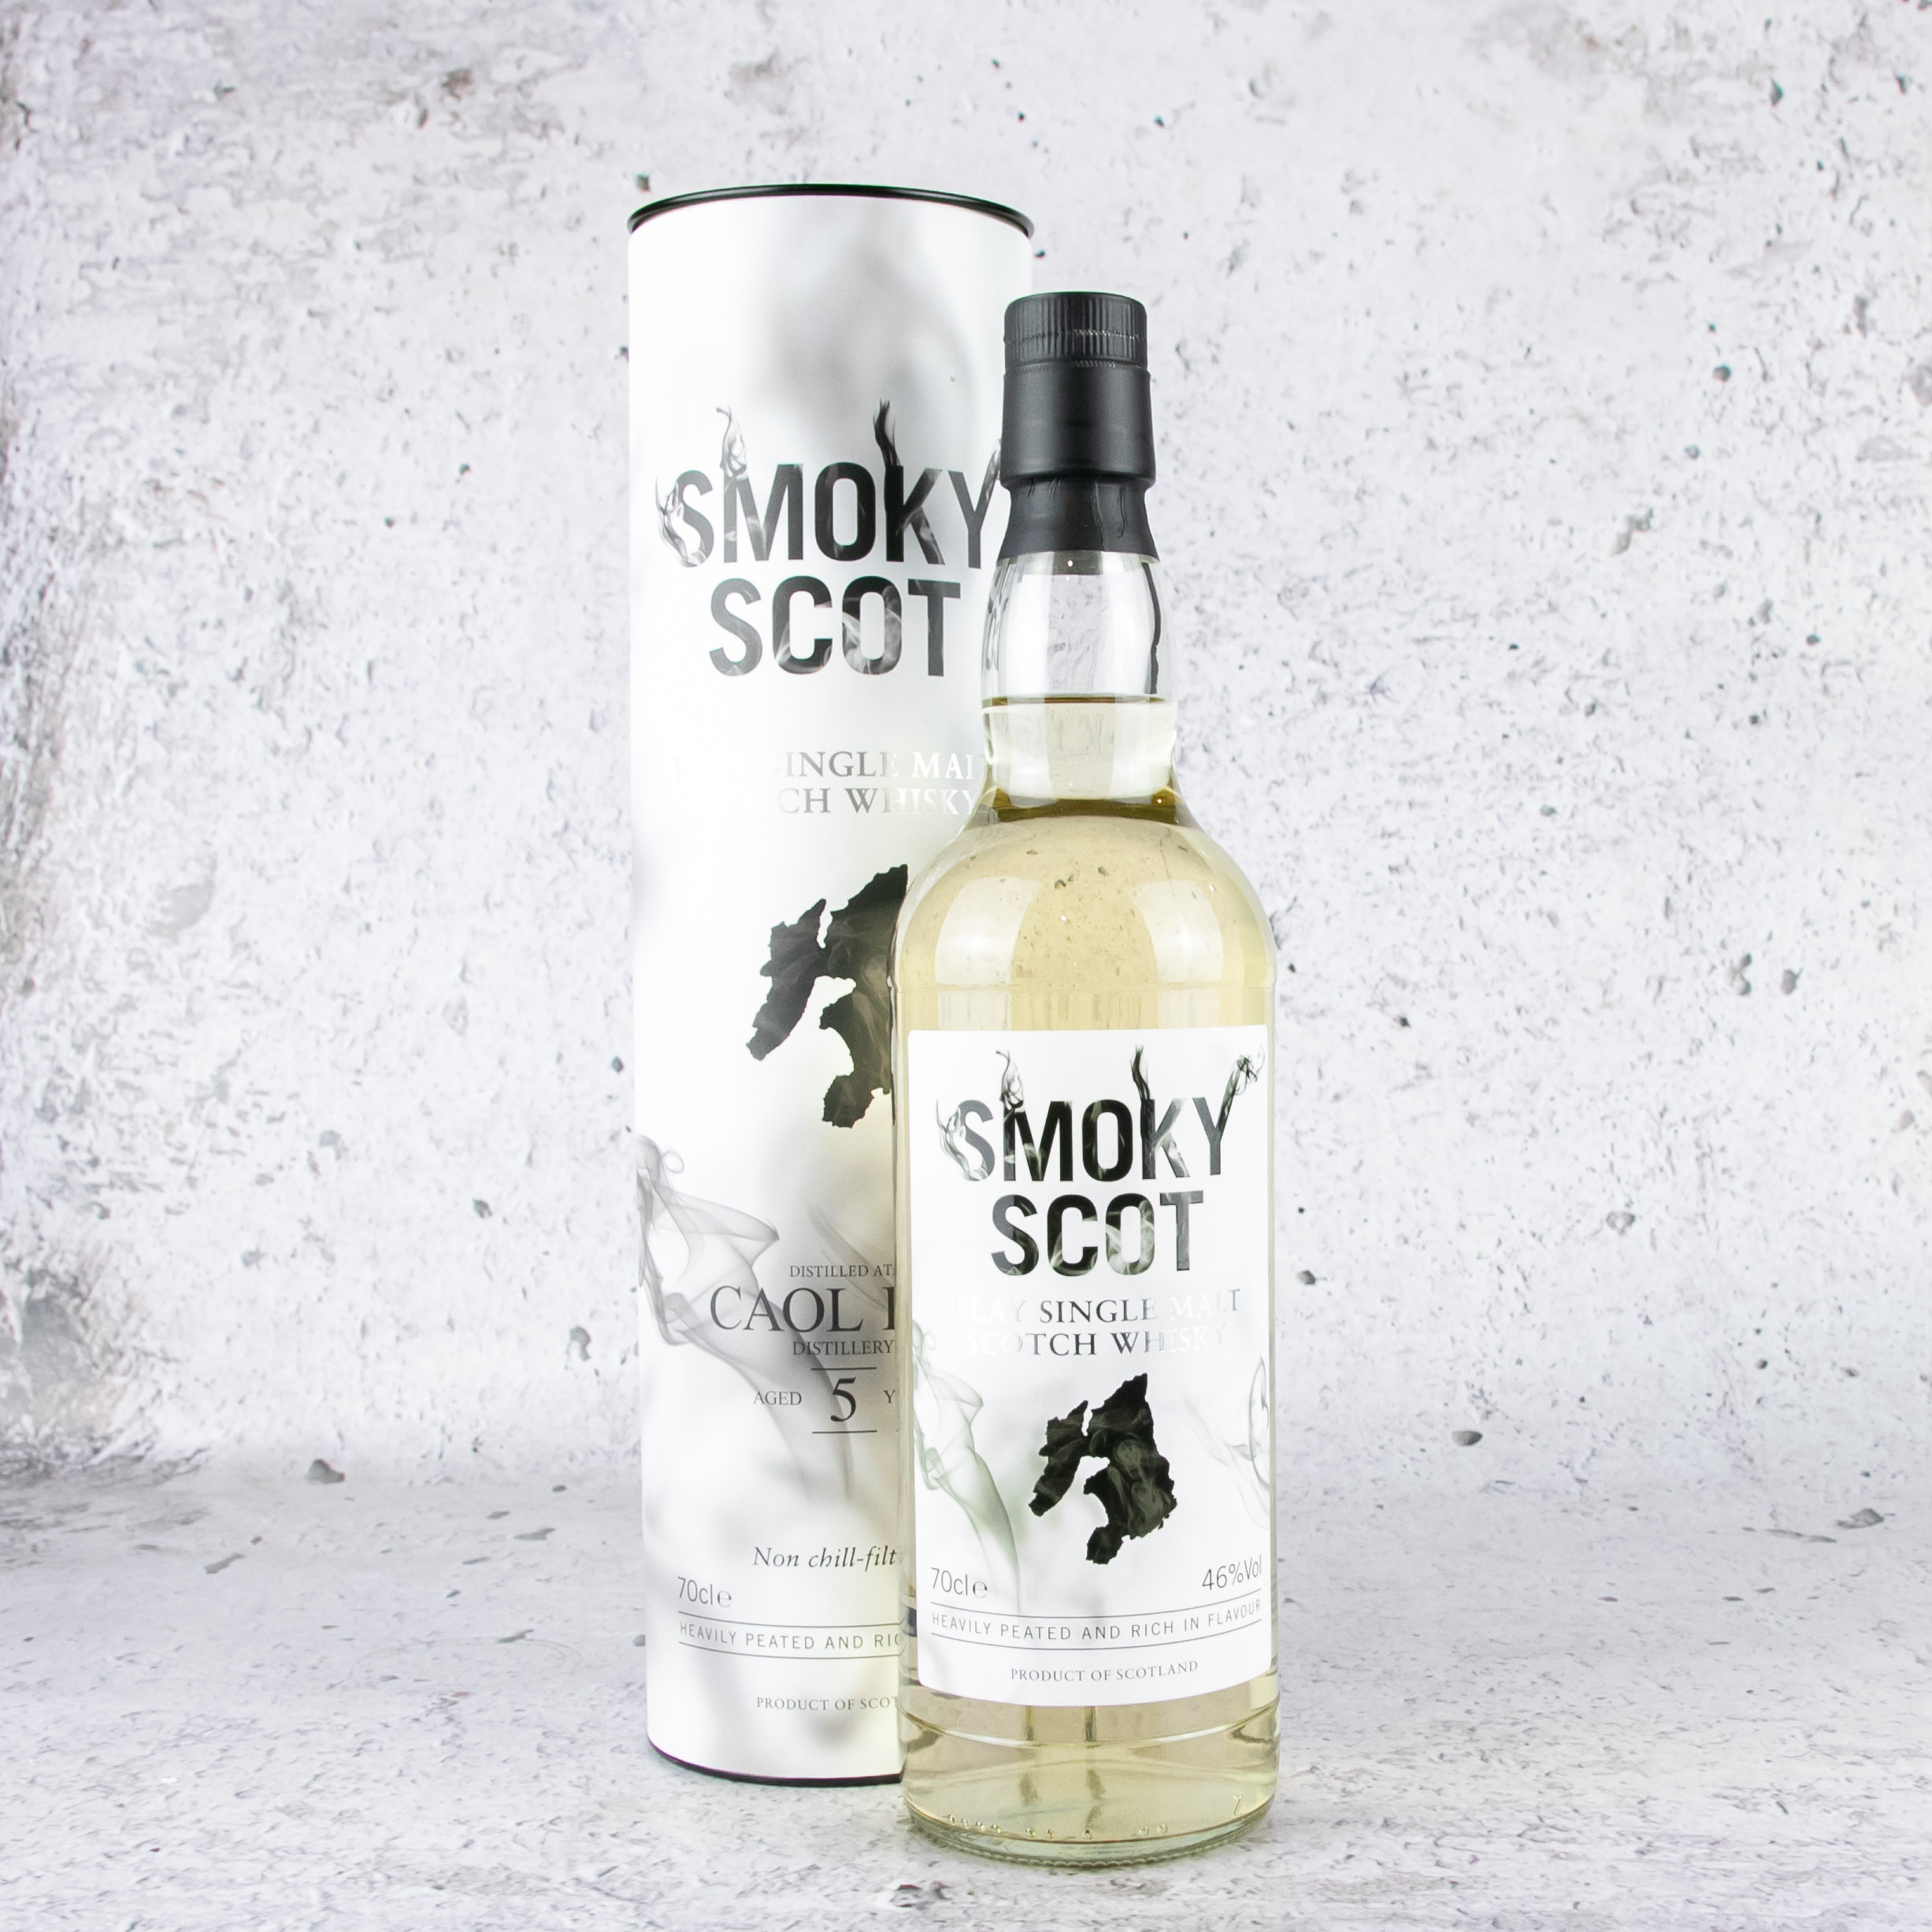 Smoky Scot Single Malt Scotch Whisky